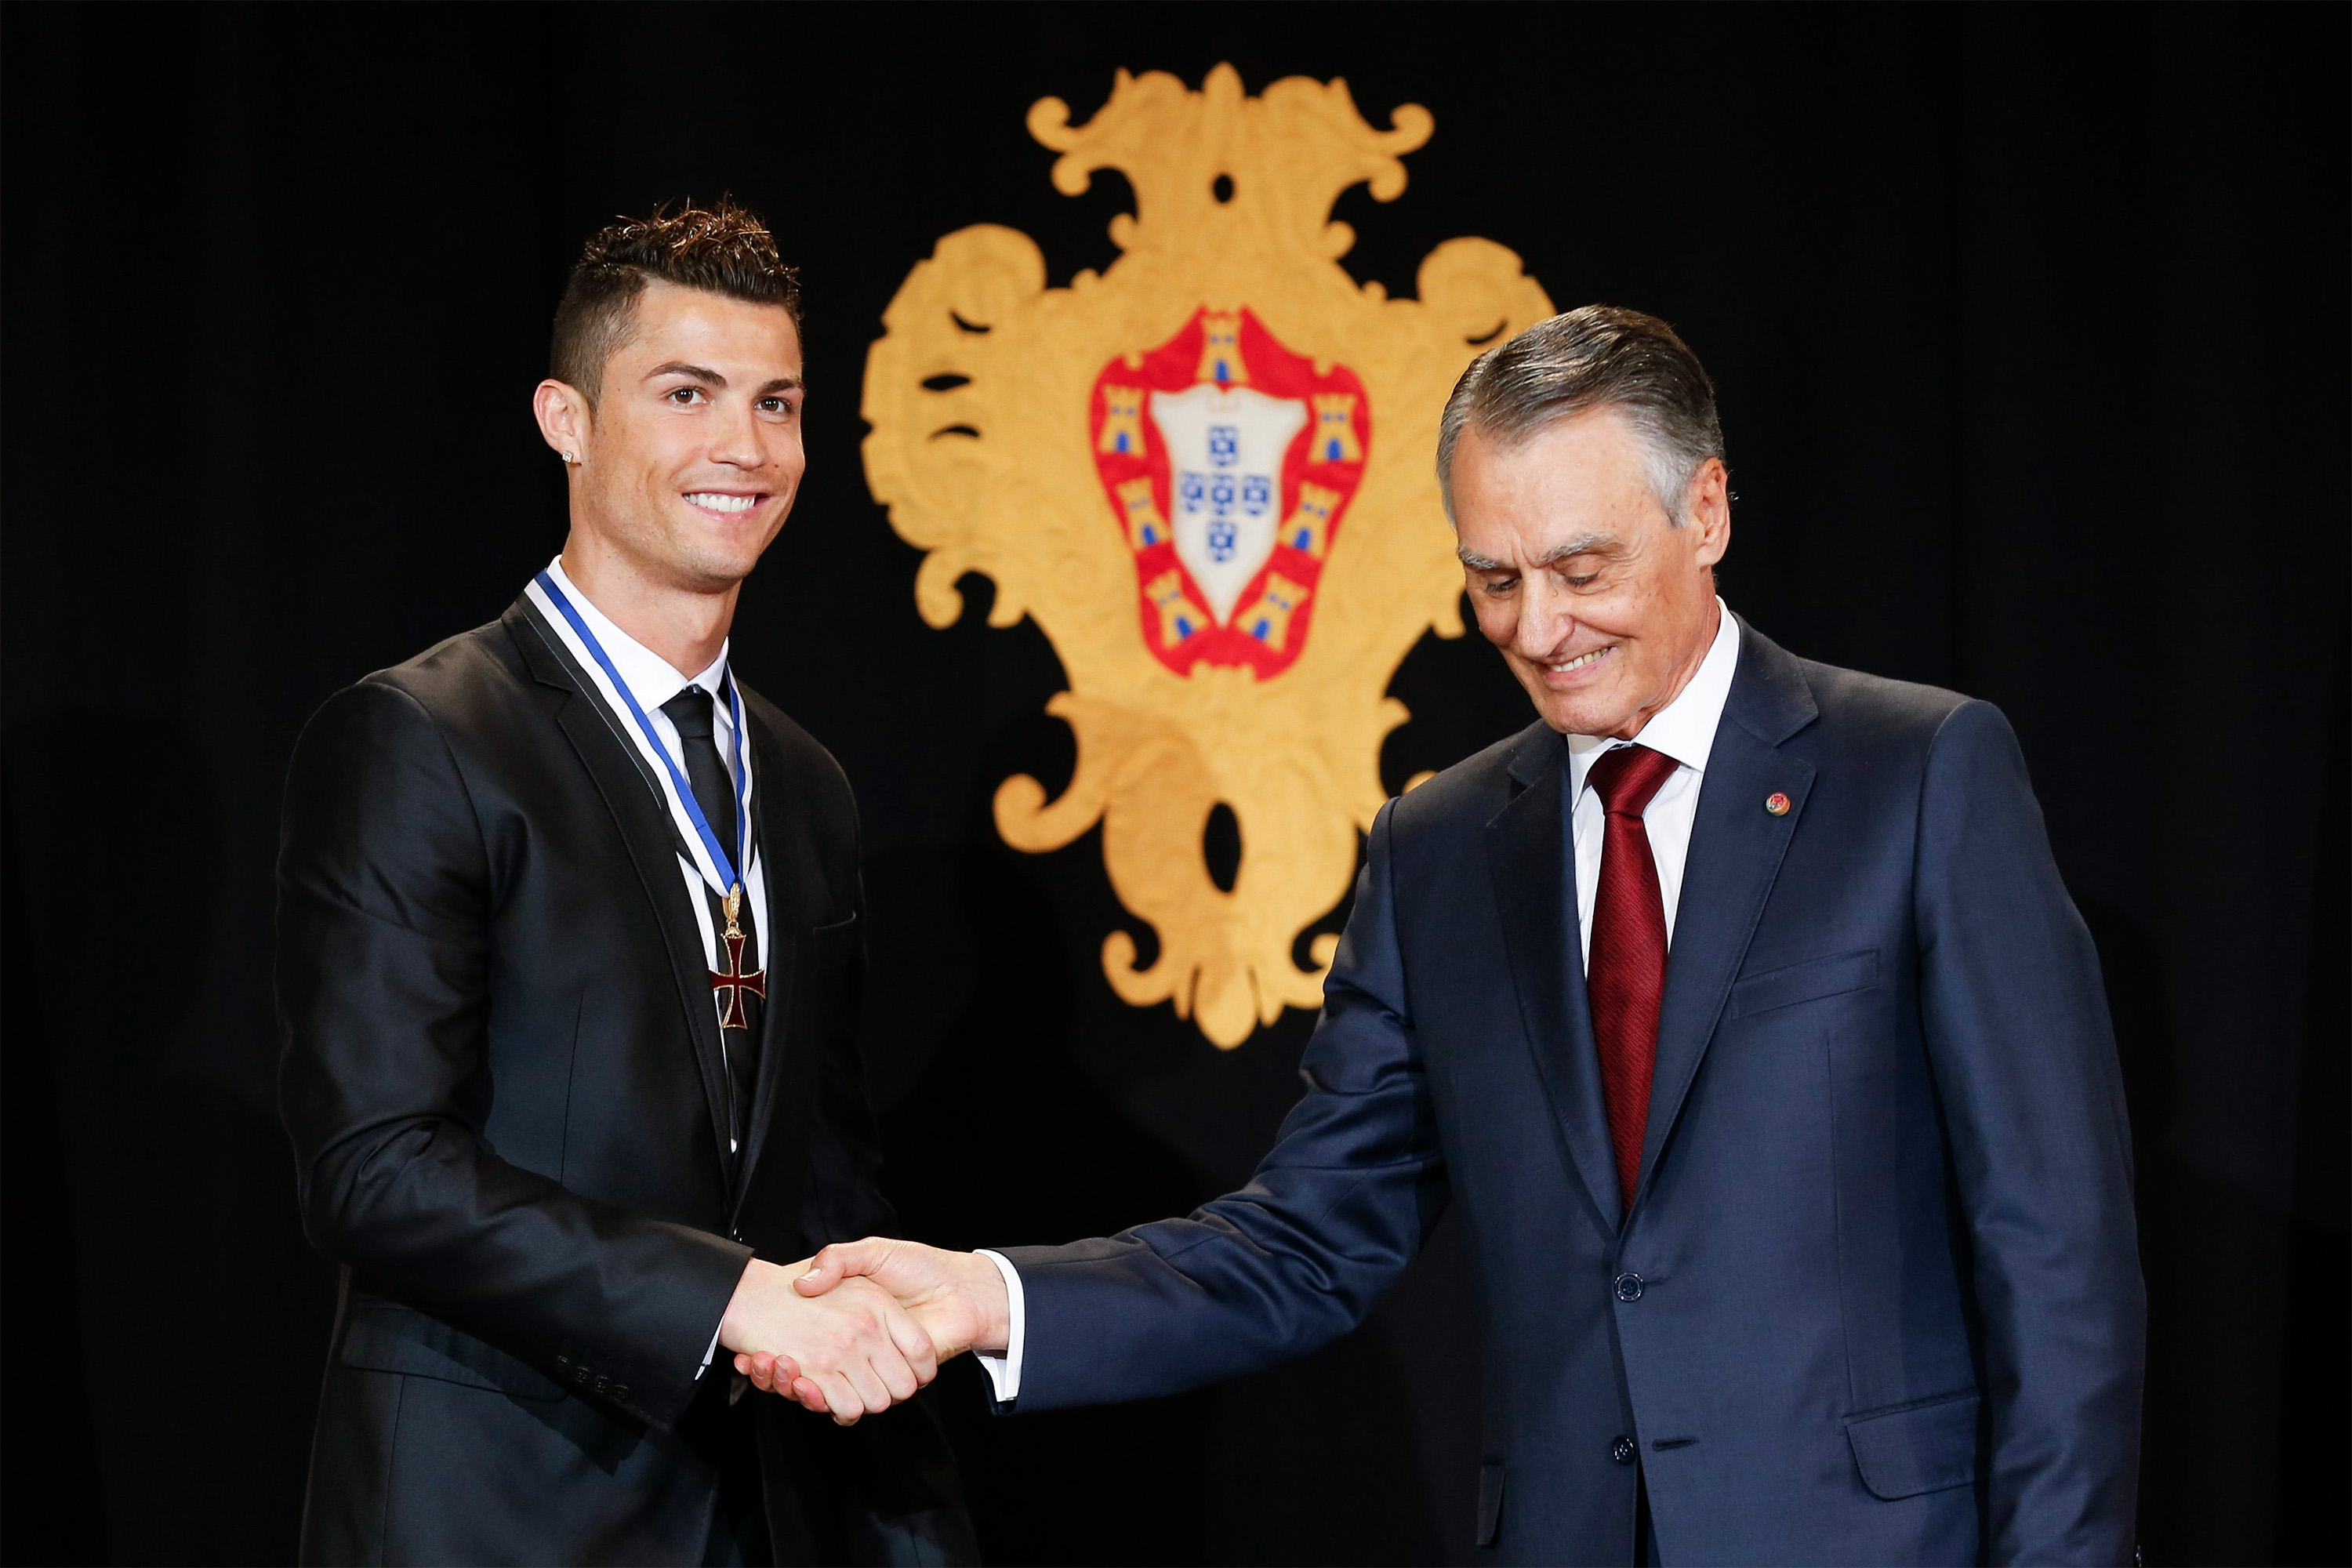 Por fraude fiscal, Cristiano Ronaldo pode perder condecorações em Portugal